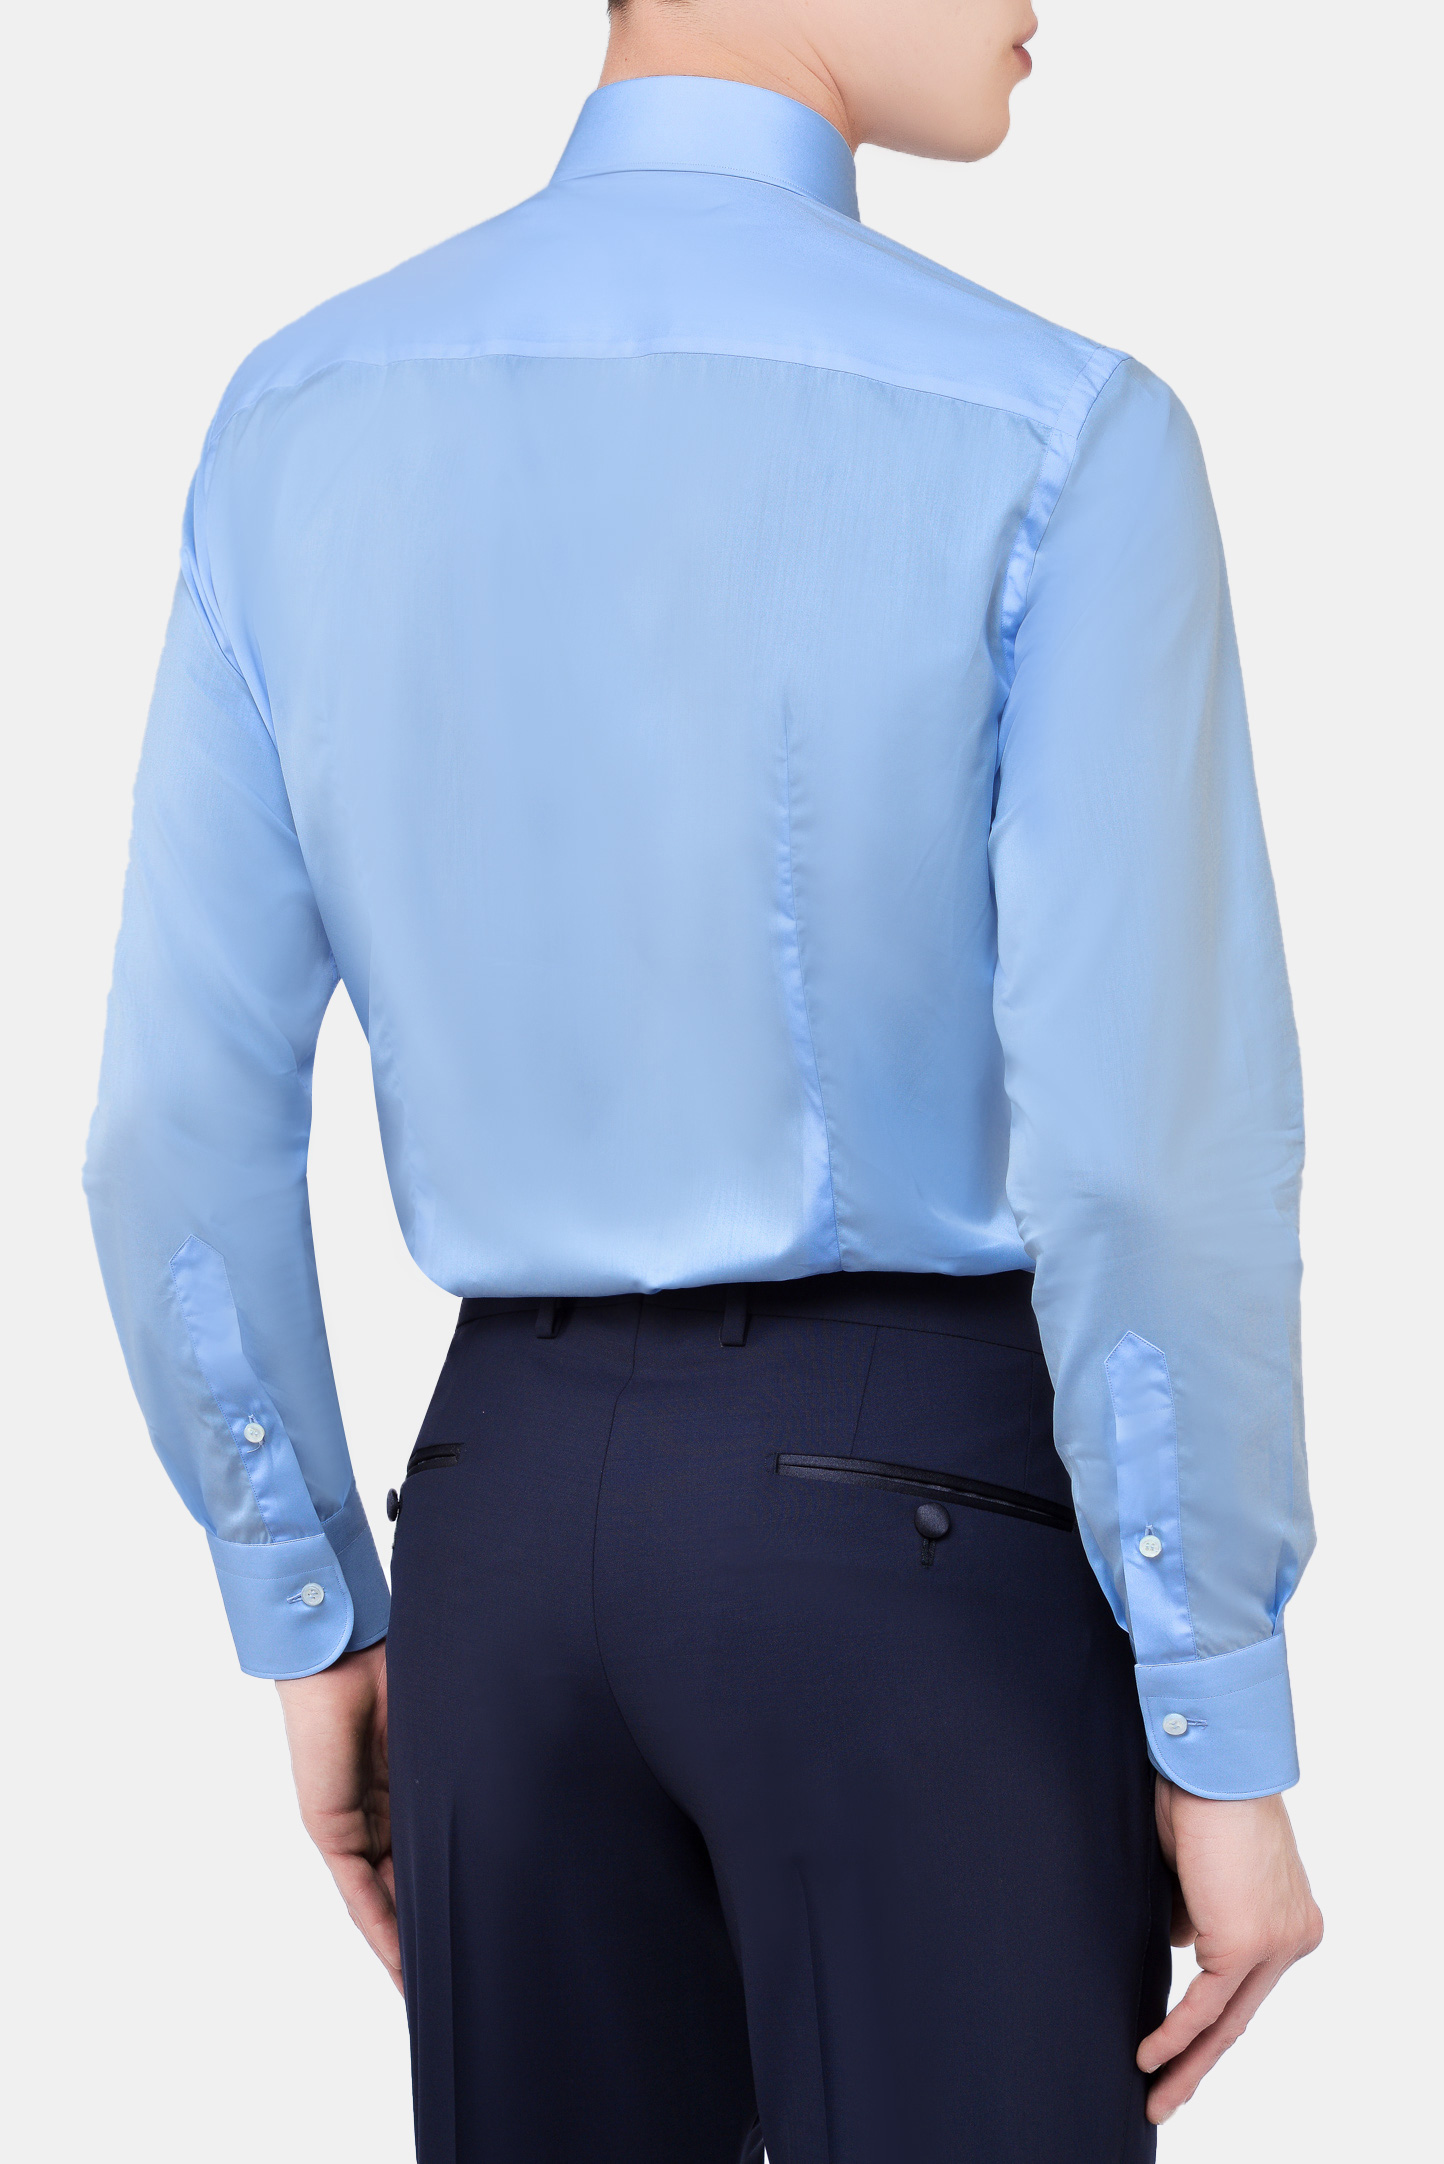 Рубашка BRIONI RCL88Y PZ024, цвет: Голубой, Мужской